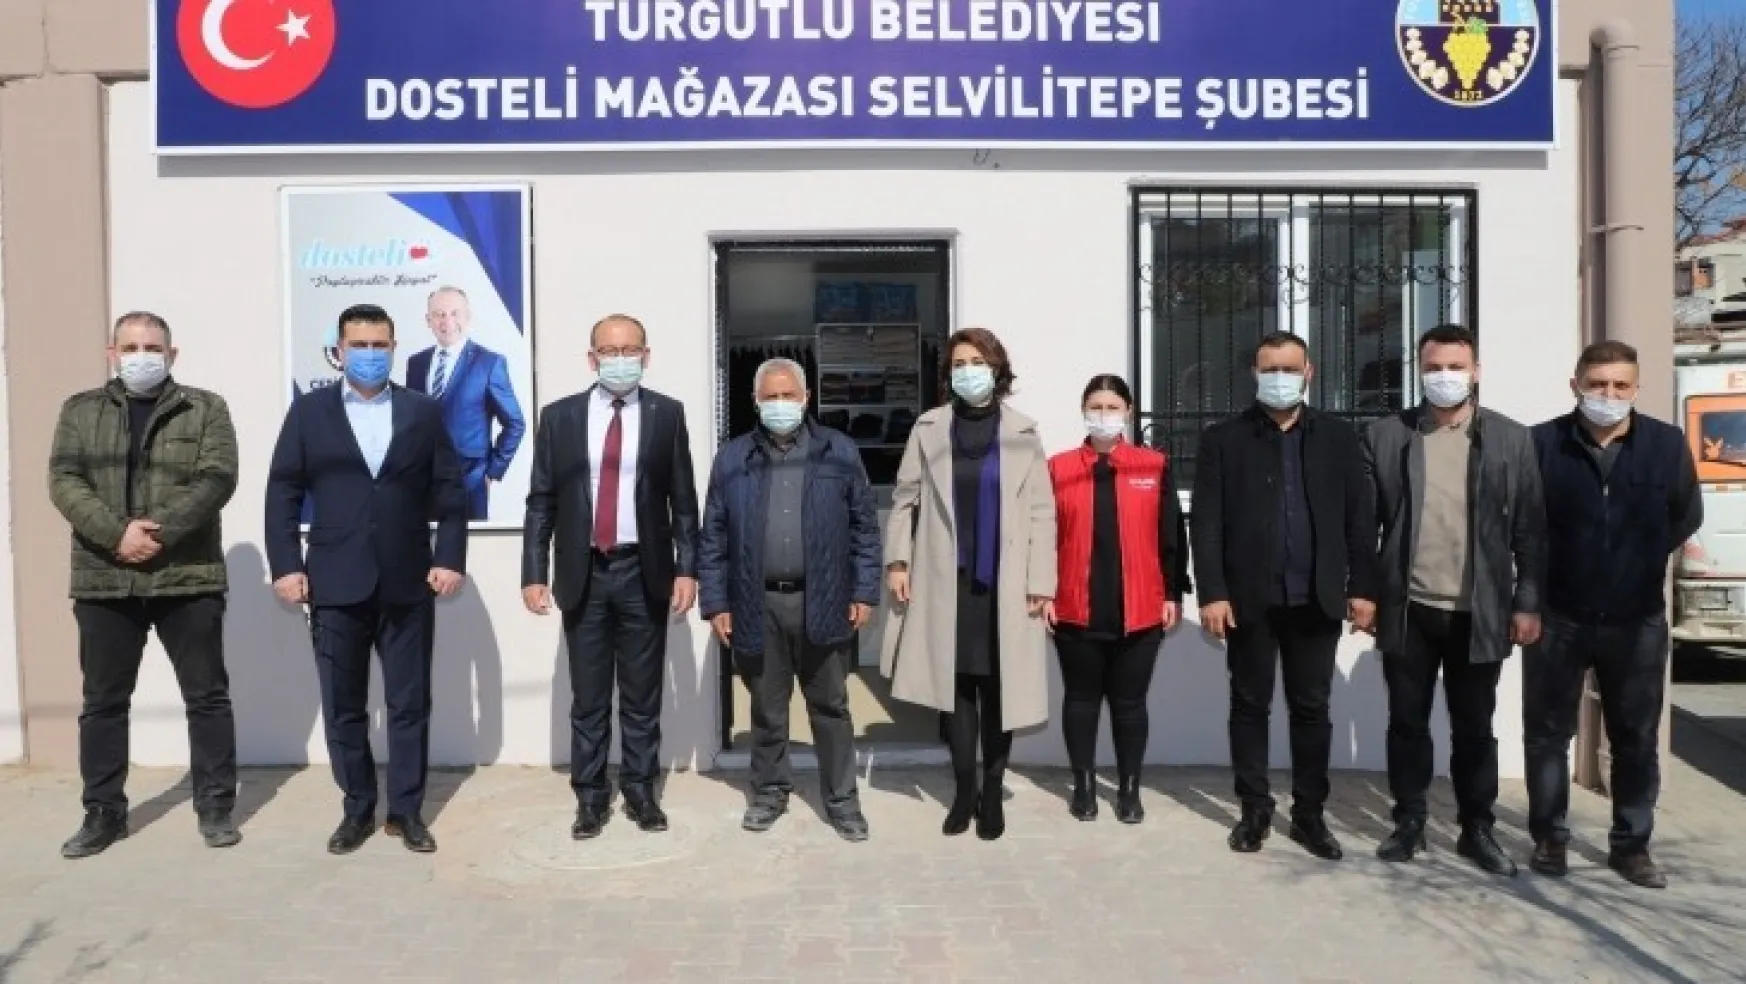 Dosteli Kıyafet Yıkama ve Temizleme Merkezi'nin Üçüncü Şubesi Selvilitepe'de Açıldı